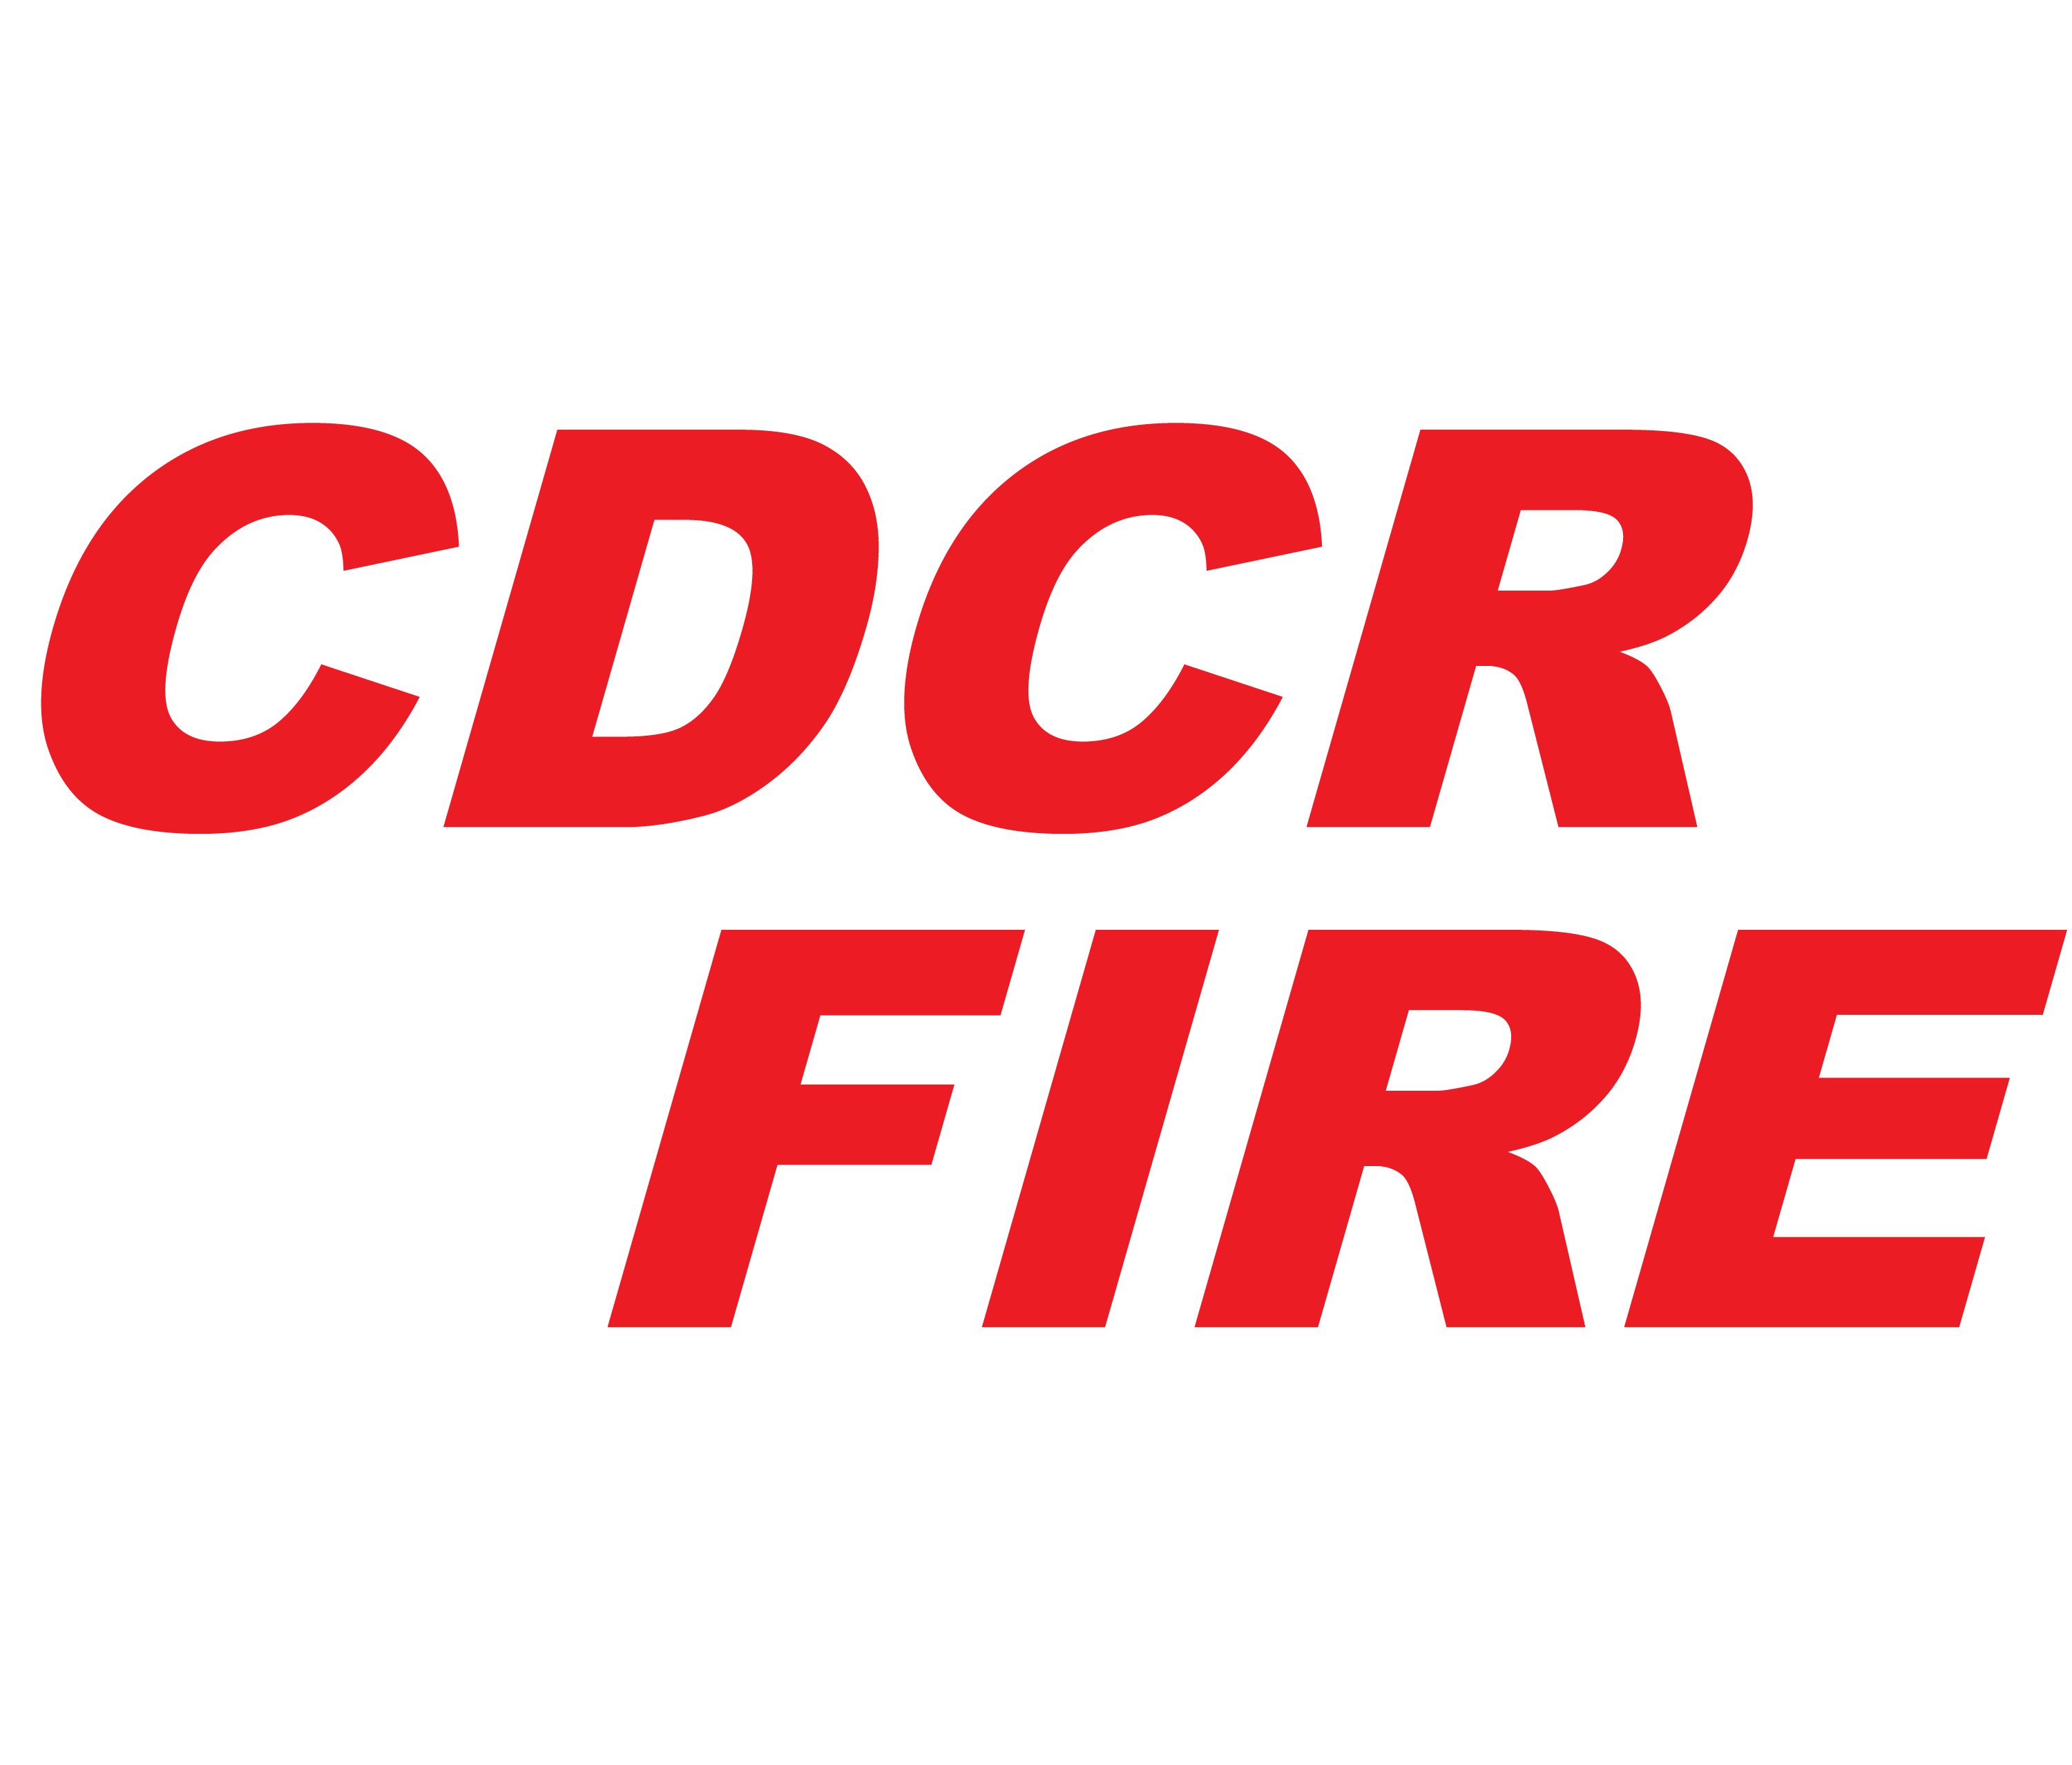 CDCR FIRE